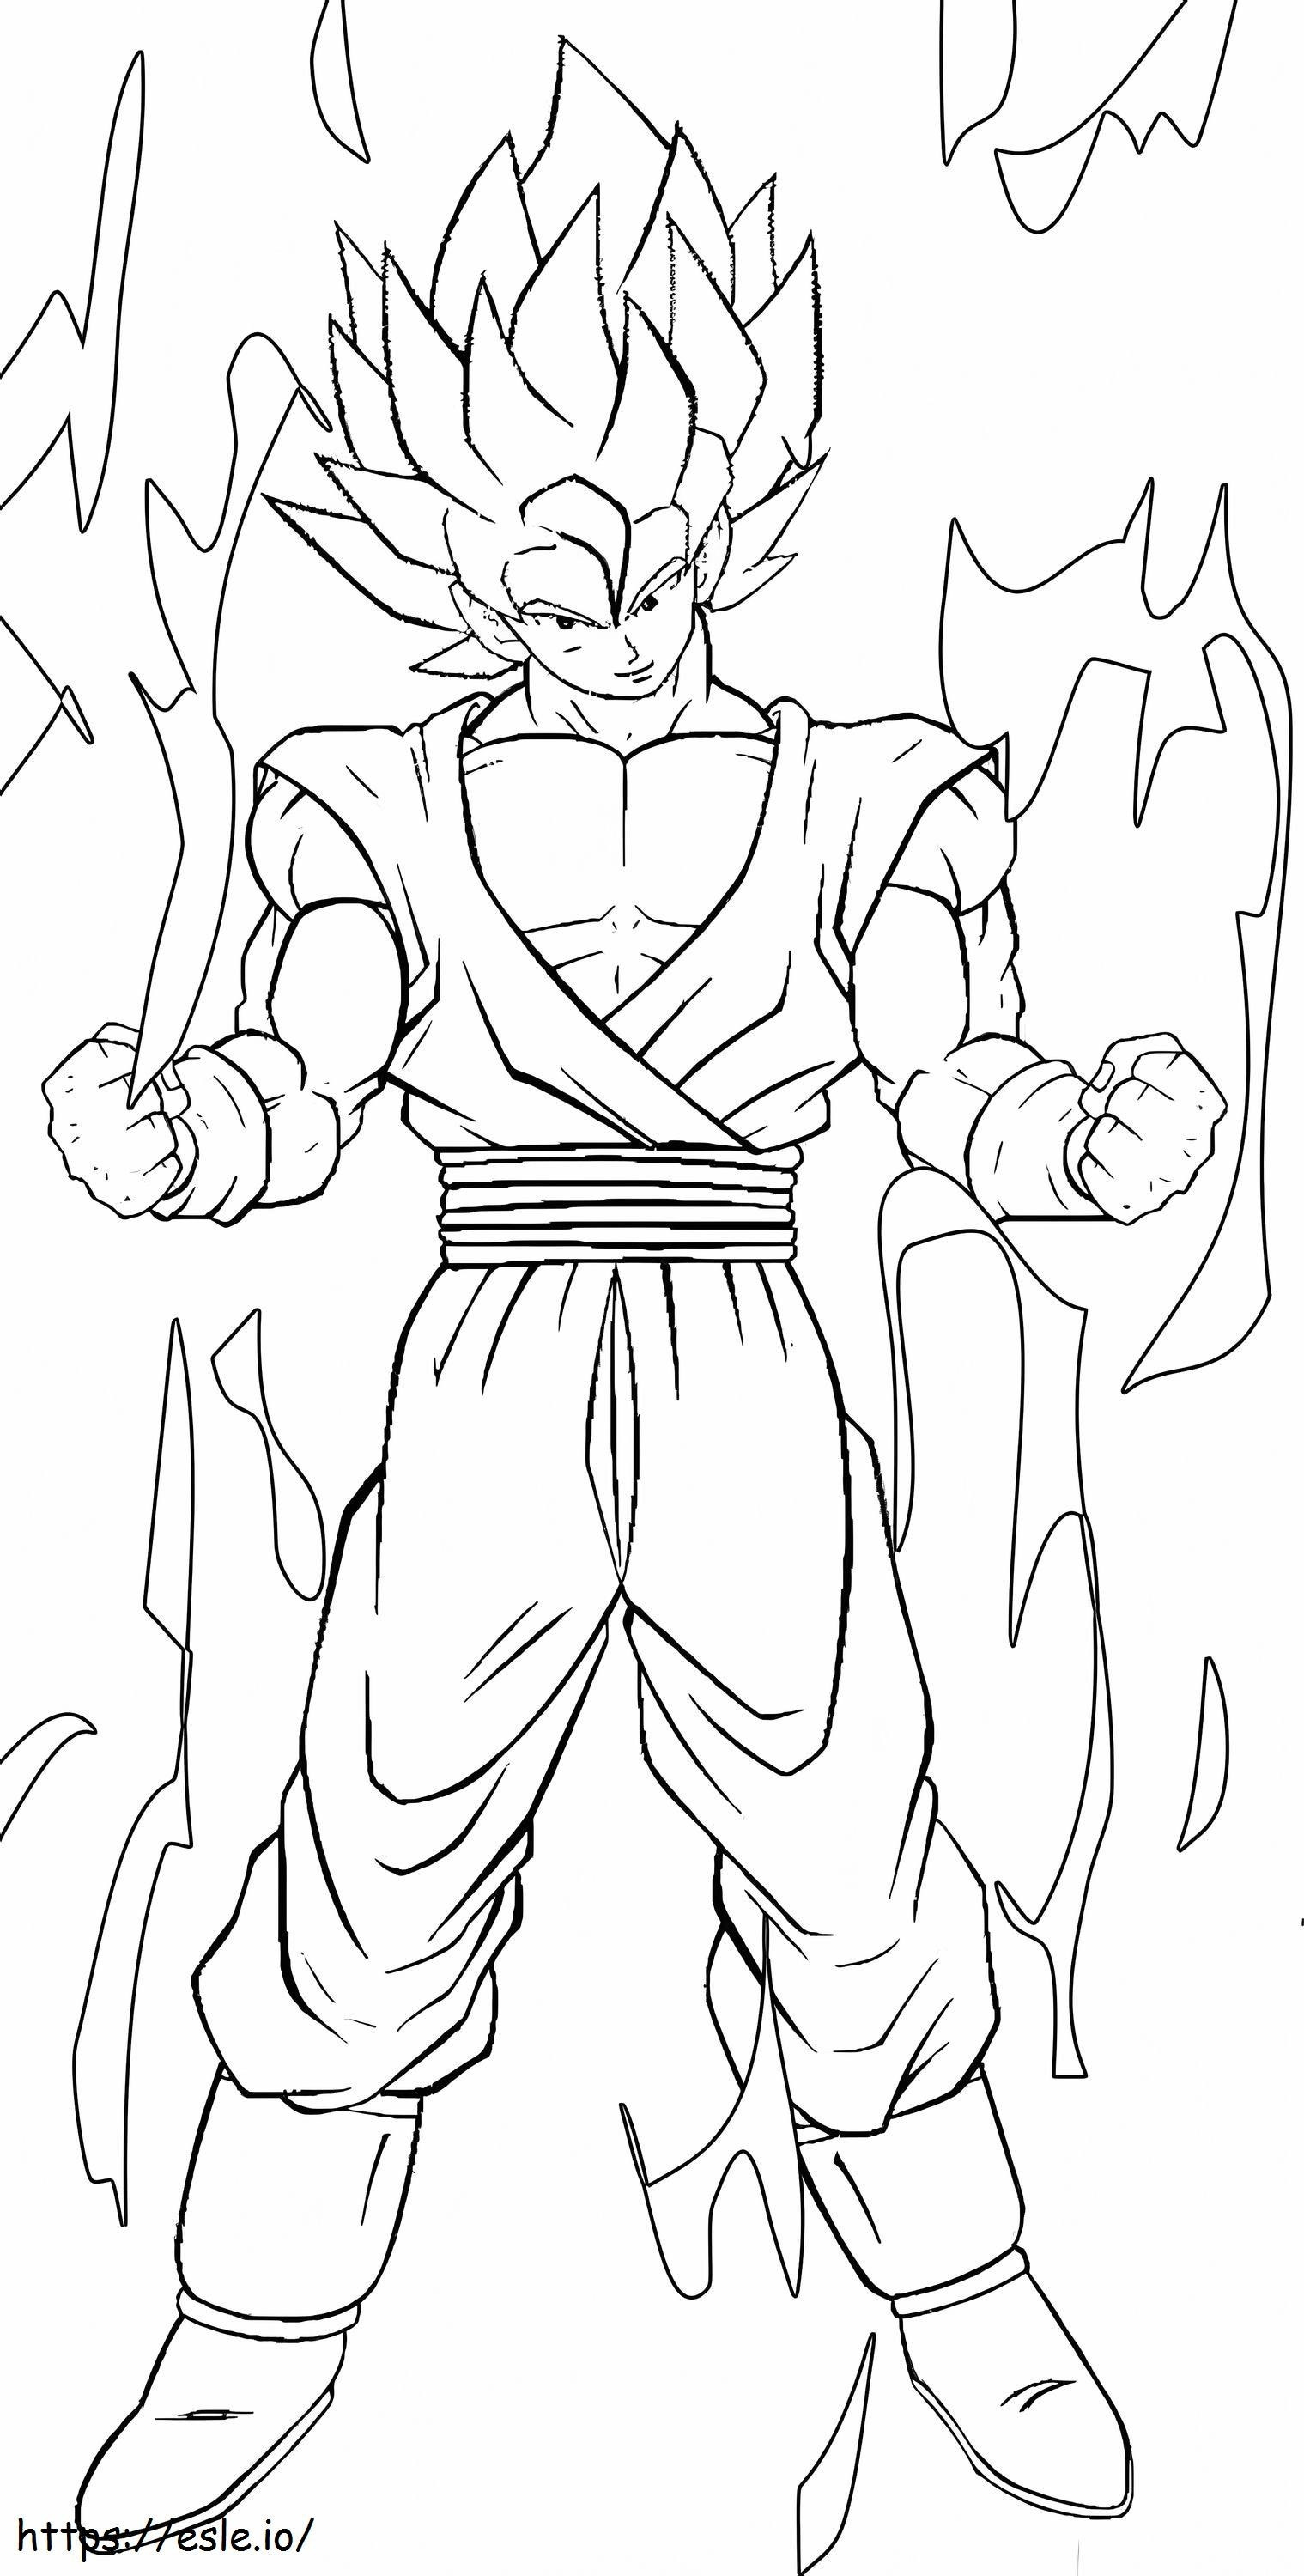 Disegnare Goku SSj1 da colorare